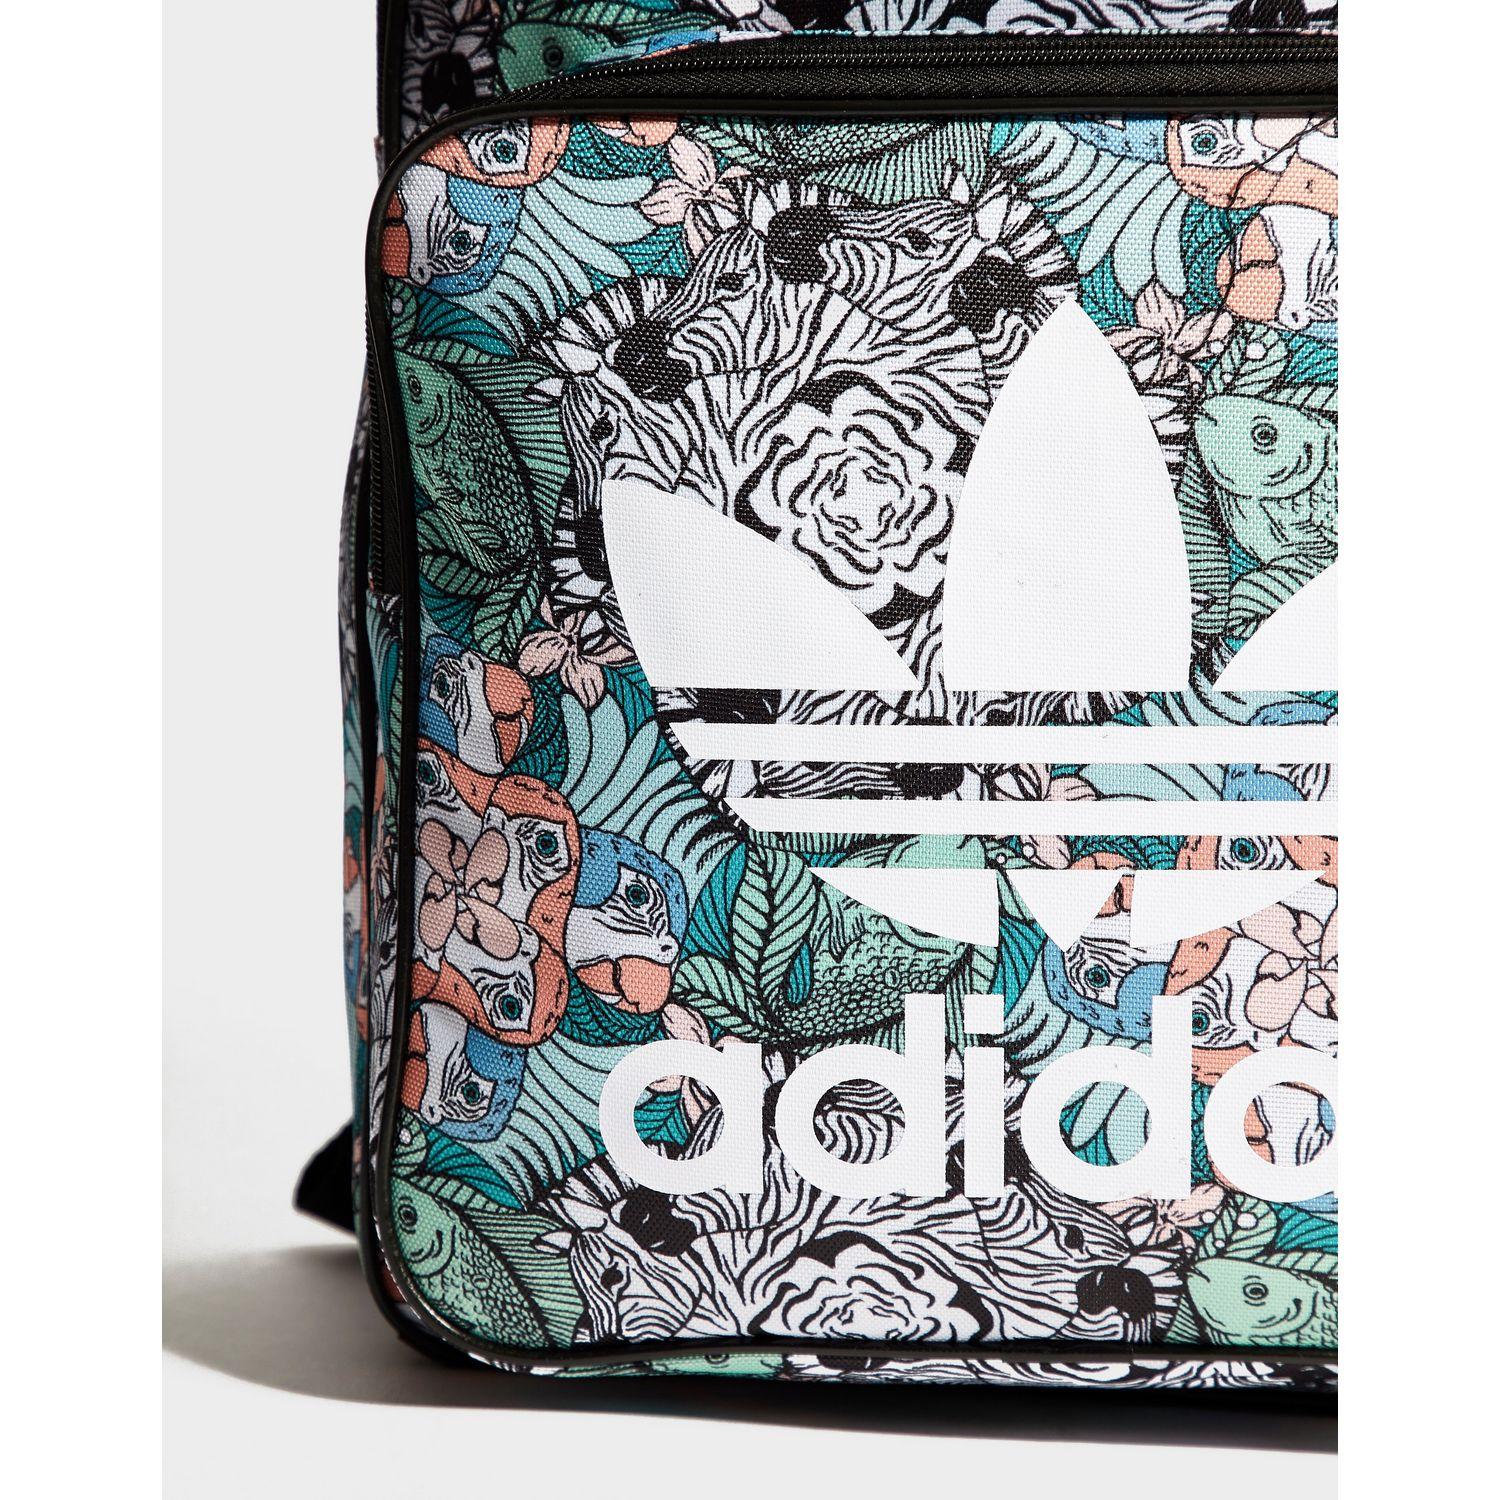 adidas zoo backpack